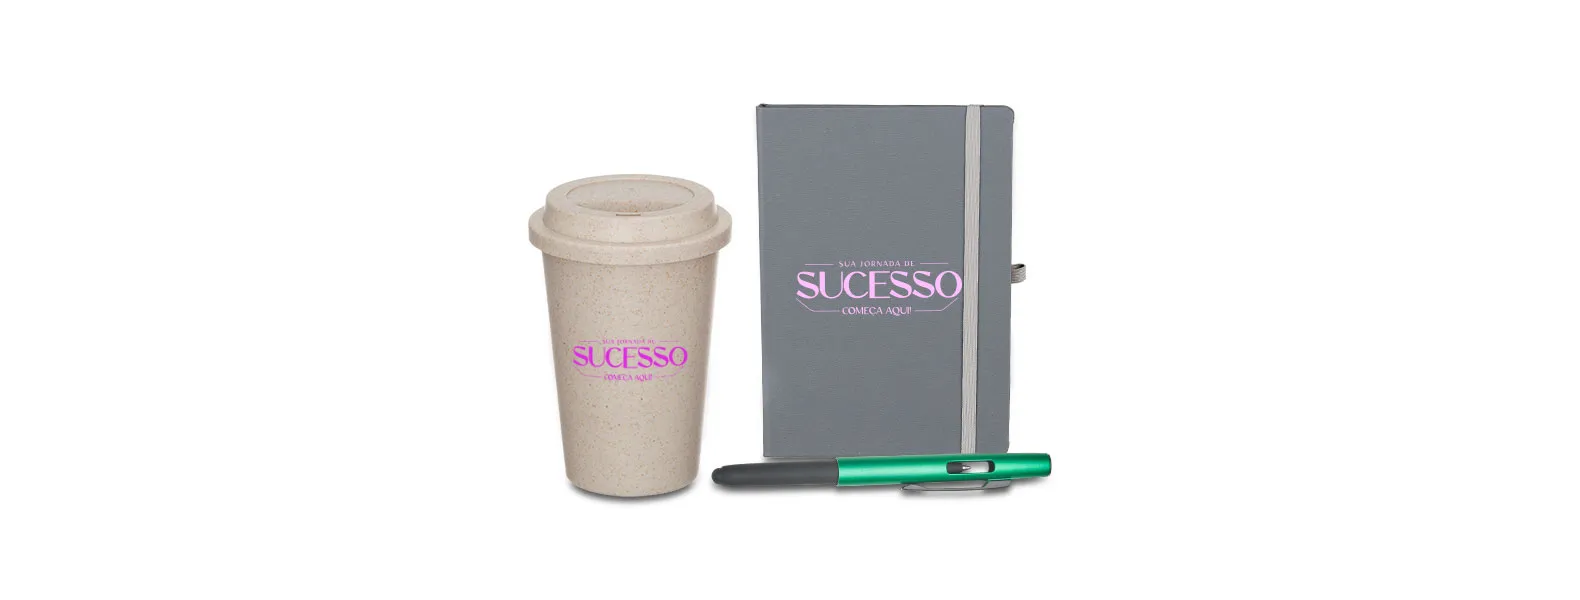 Kit composto por copo em fibra de bambu/PP; caderno para anotações cinza com capa dura e caneta esferográfica em ABS verde.